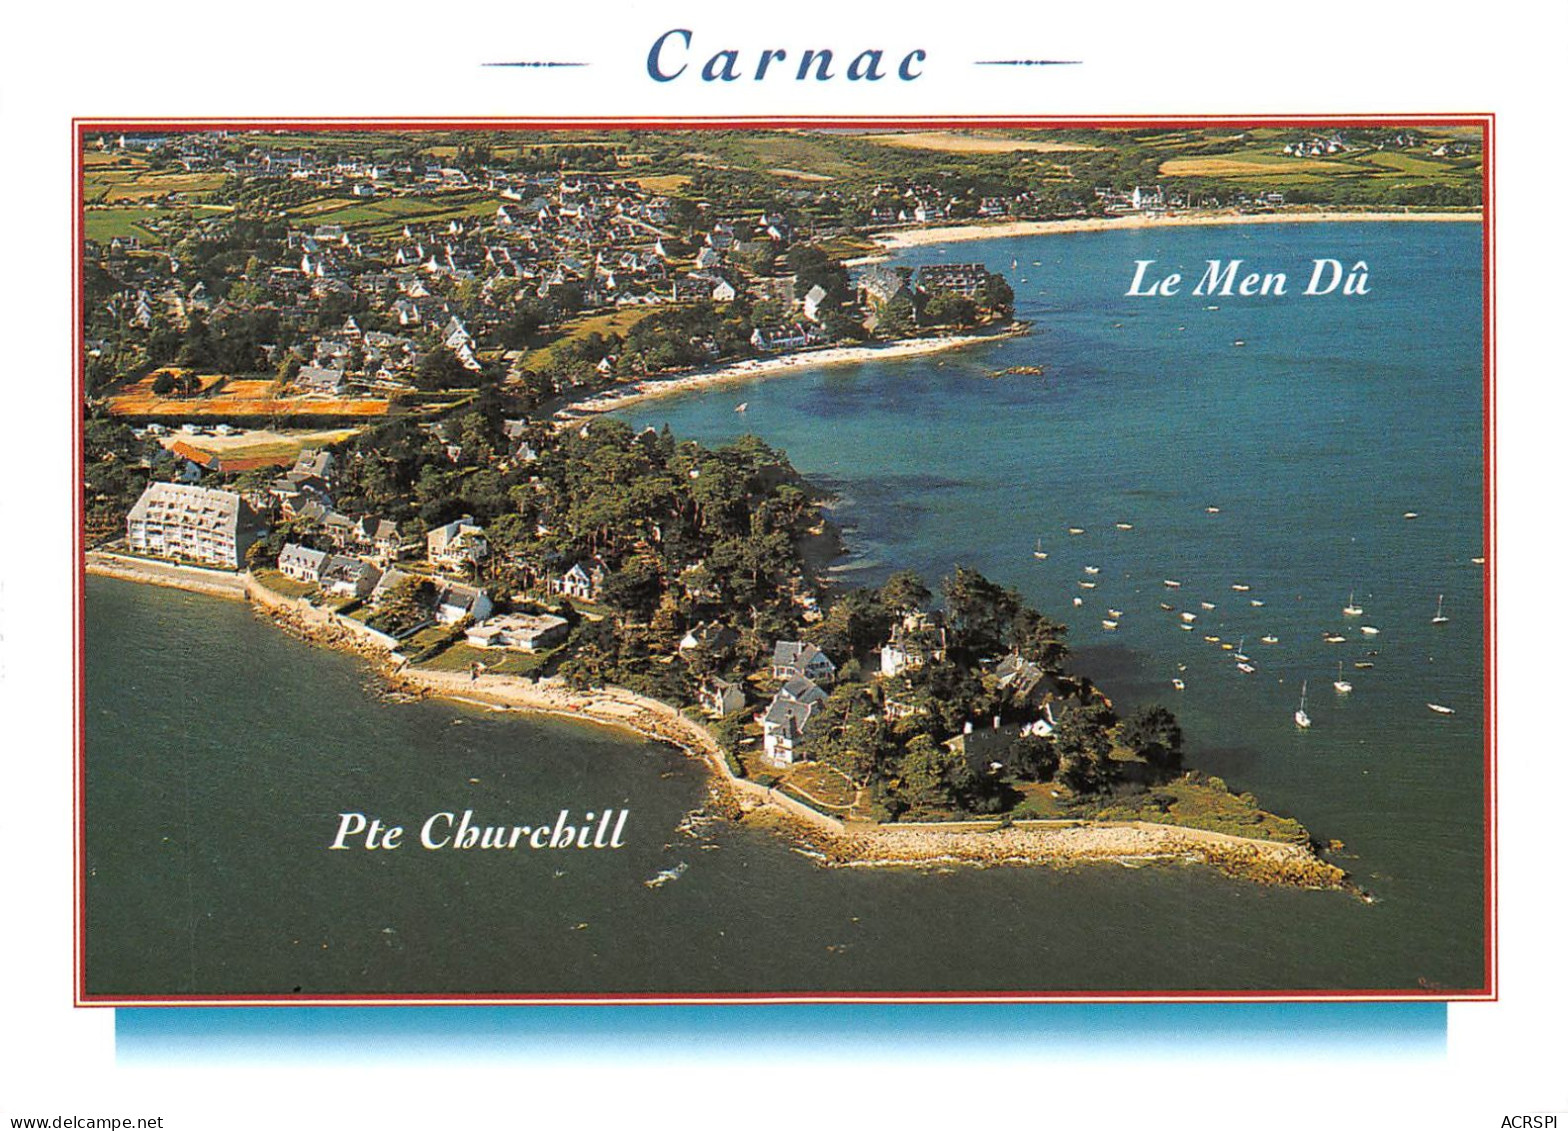 56 CARNAC Pointe Churchill Et Le Men-Dû (Scan R/V) N° 23 \MS9031 - Carnac